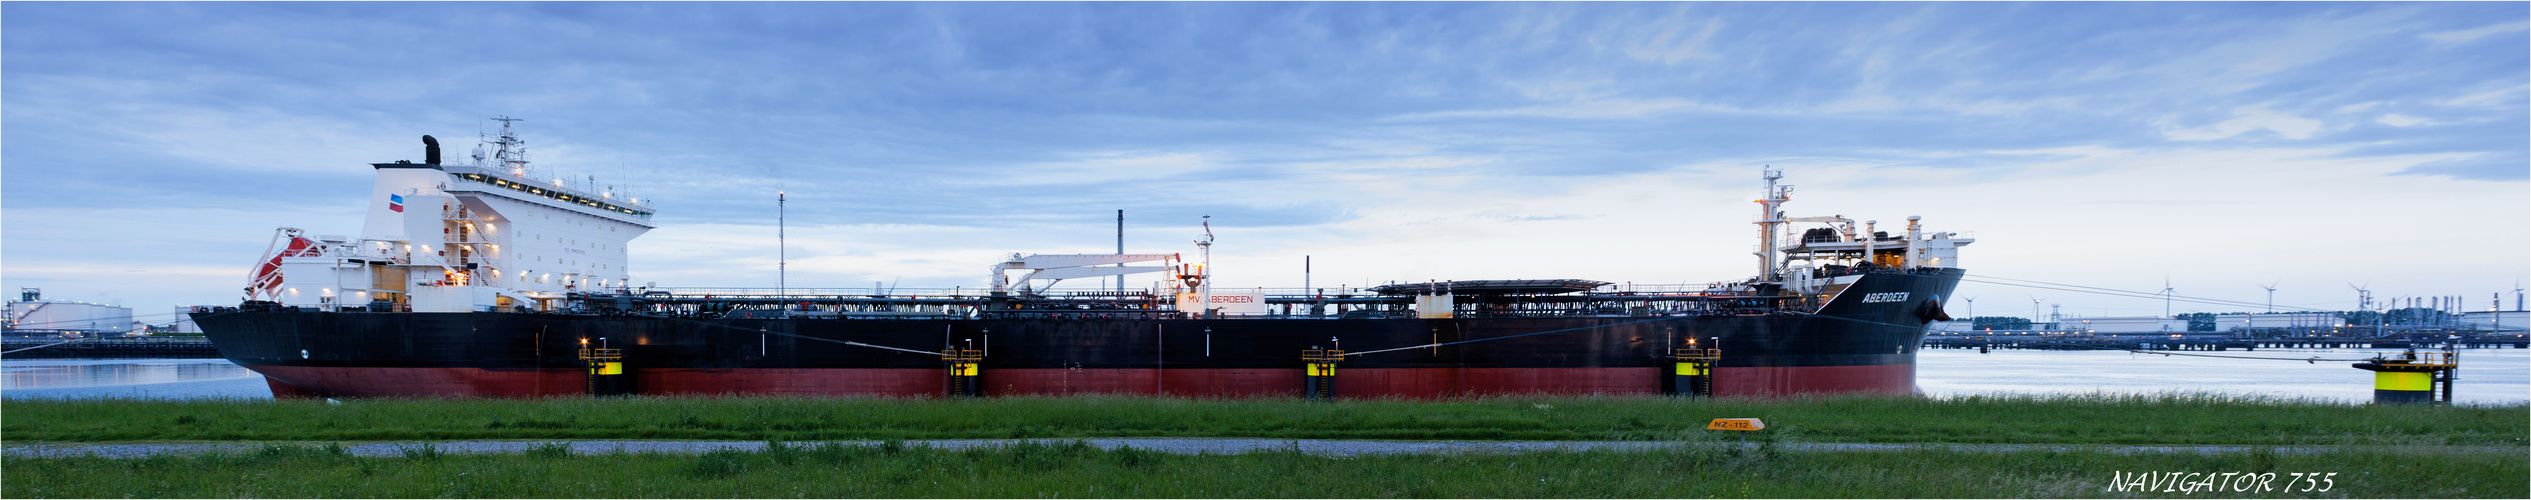 Crude Oil Tanker ABERDEEN,Calandkanal, Rotterdam.